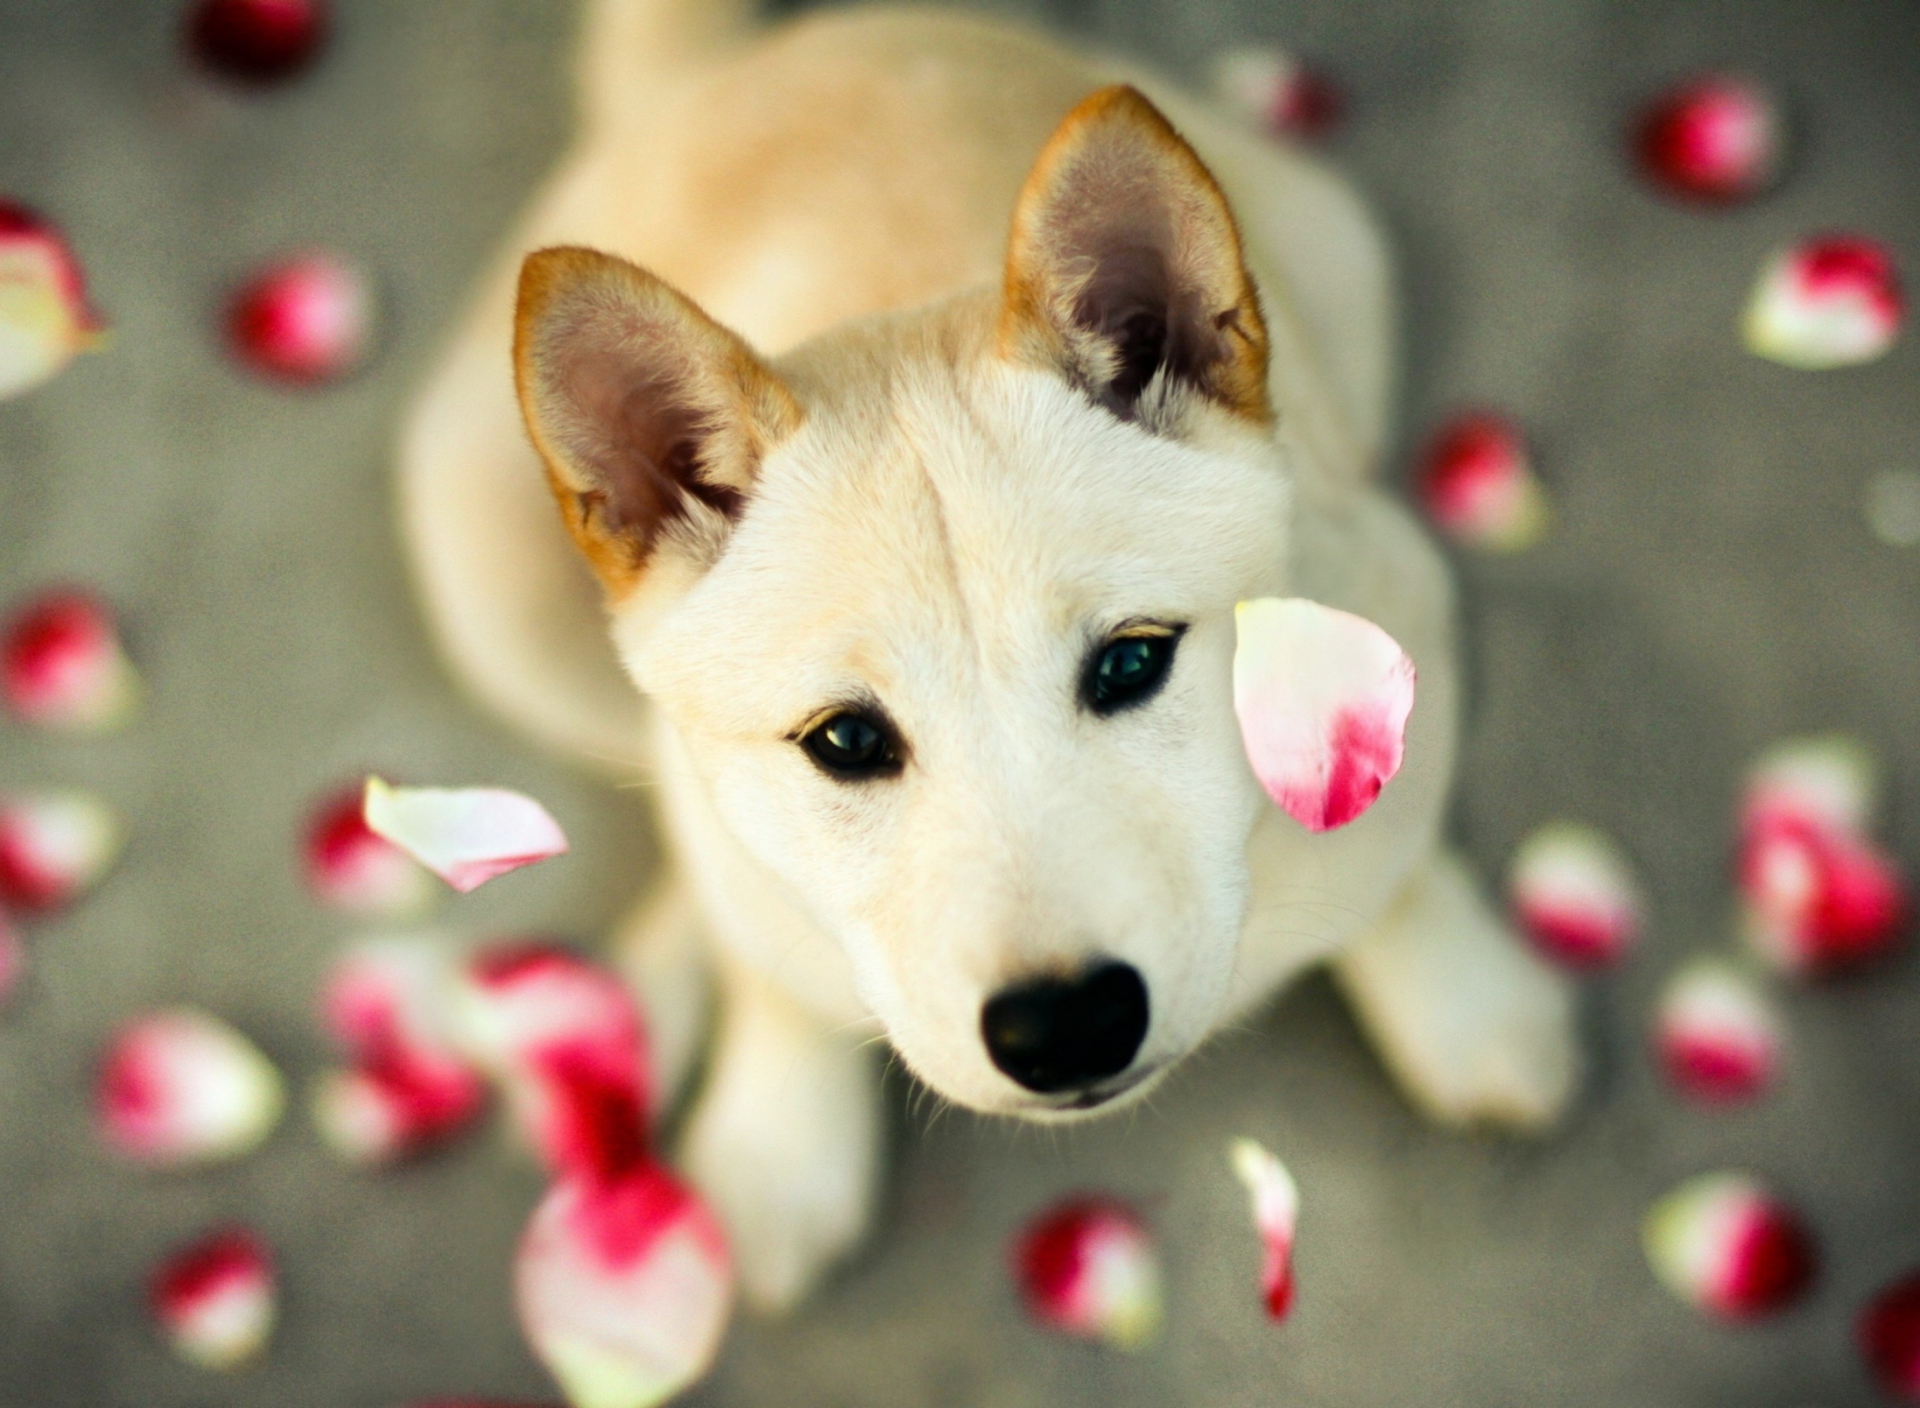 Обои Dog And Rose Petals 1920x1408